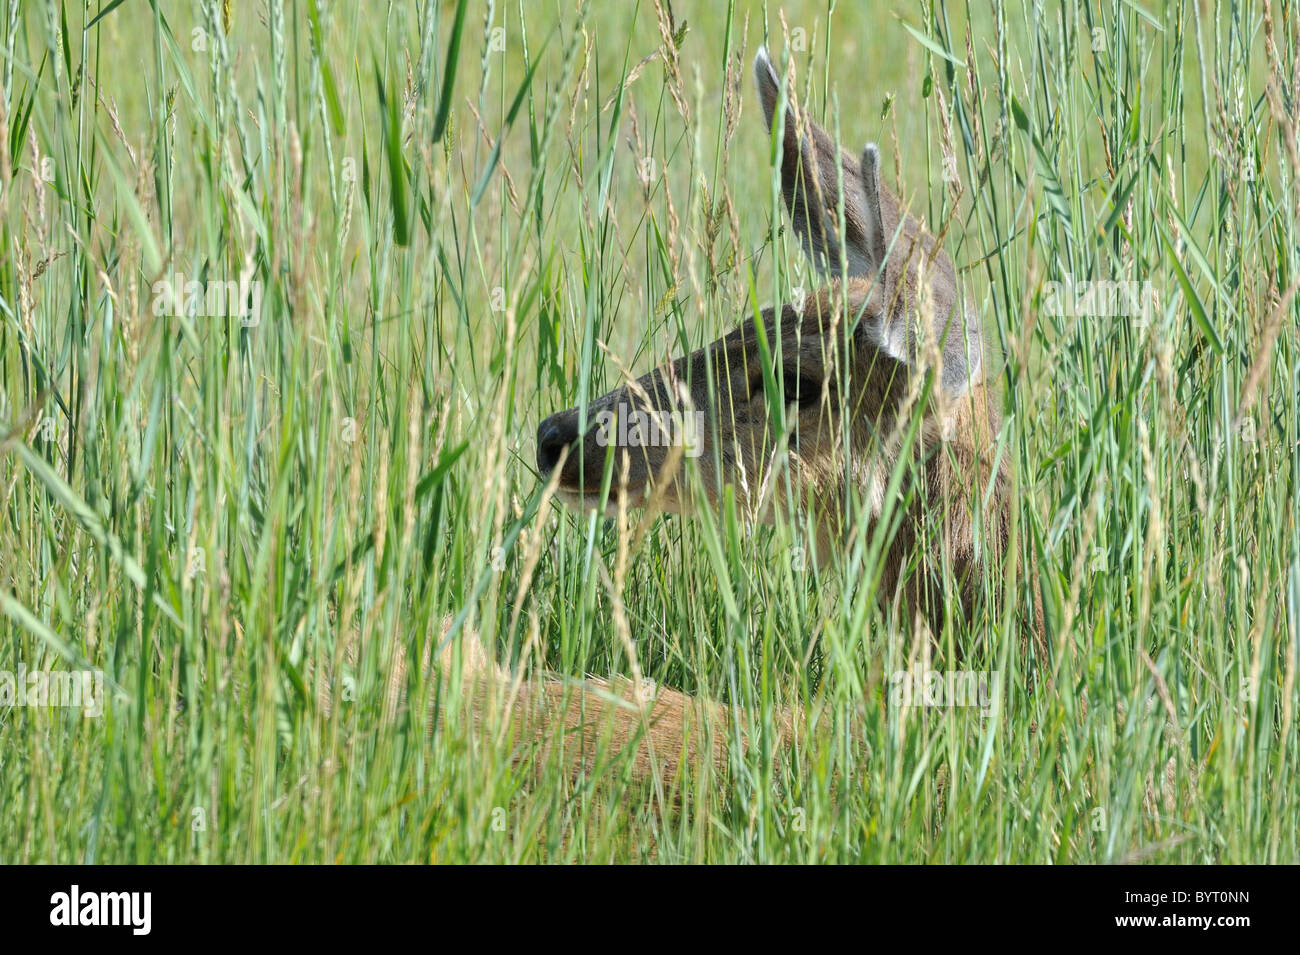 Doe, Does, Female Deer, Mule Deer Stock Photo - Alamy